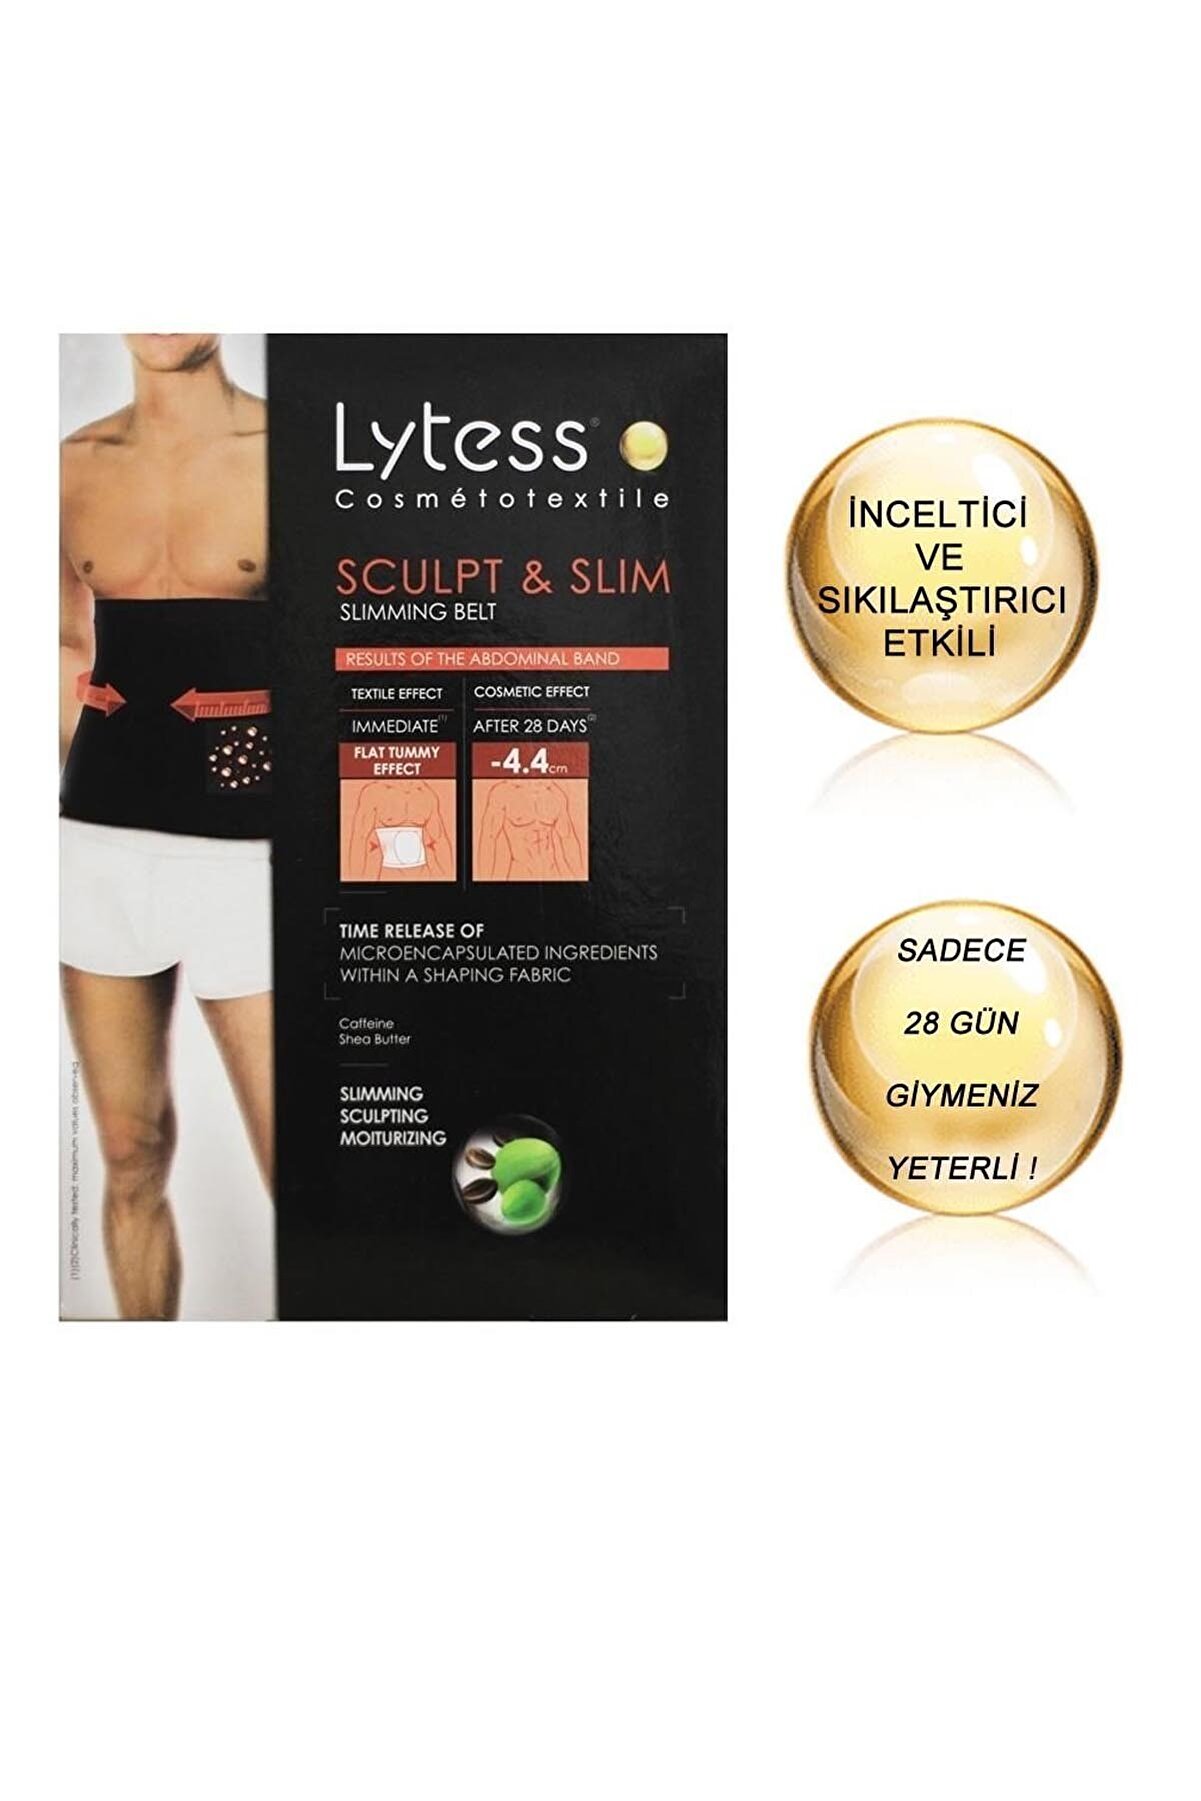 Lytess Erkekler için Sıkıştırıcı Etkili Siyah Korse - Men Sculpt&Slim Slimming Belt Xxl 3662019000289